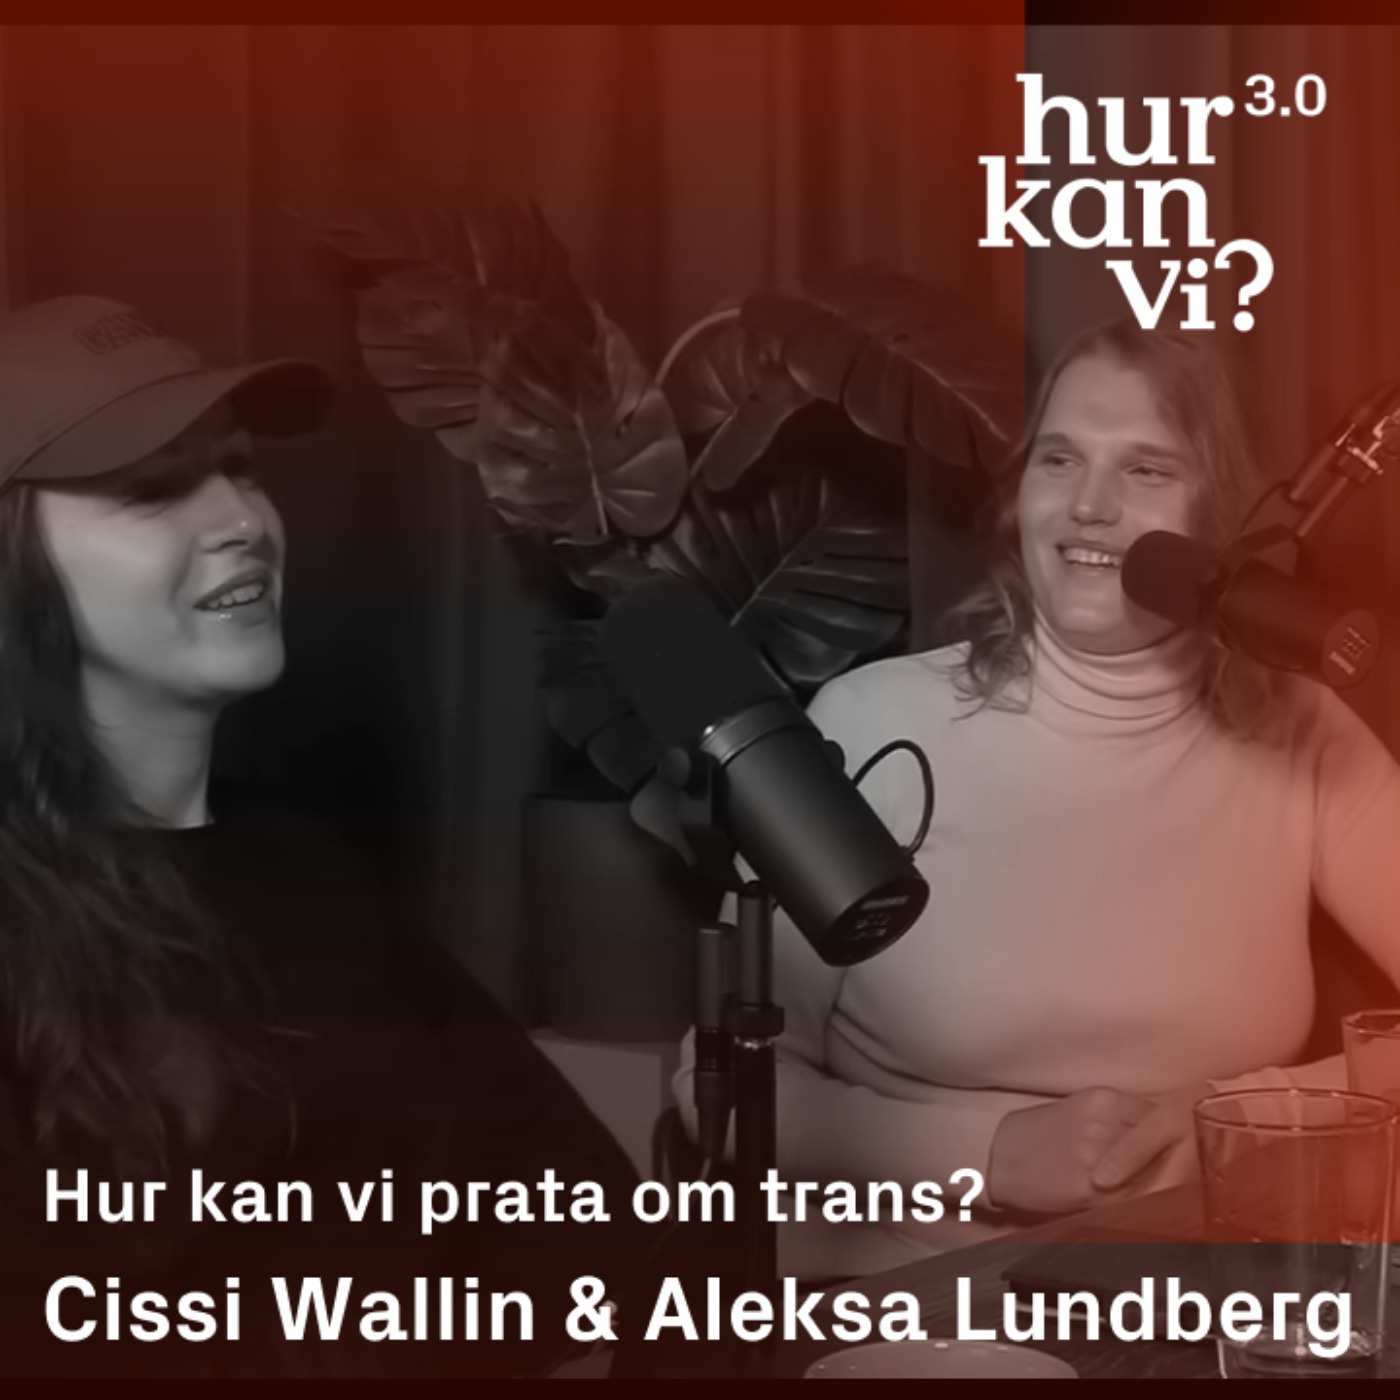 Cissi Wallin & Aleksa Lundberg - Q&A